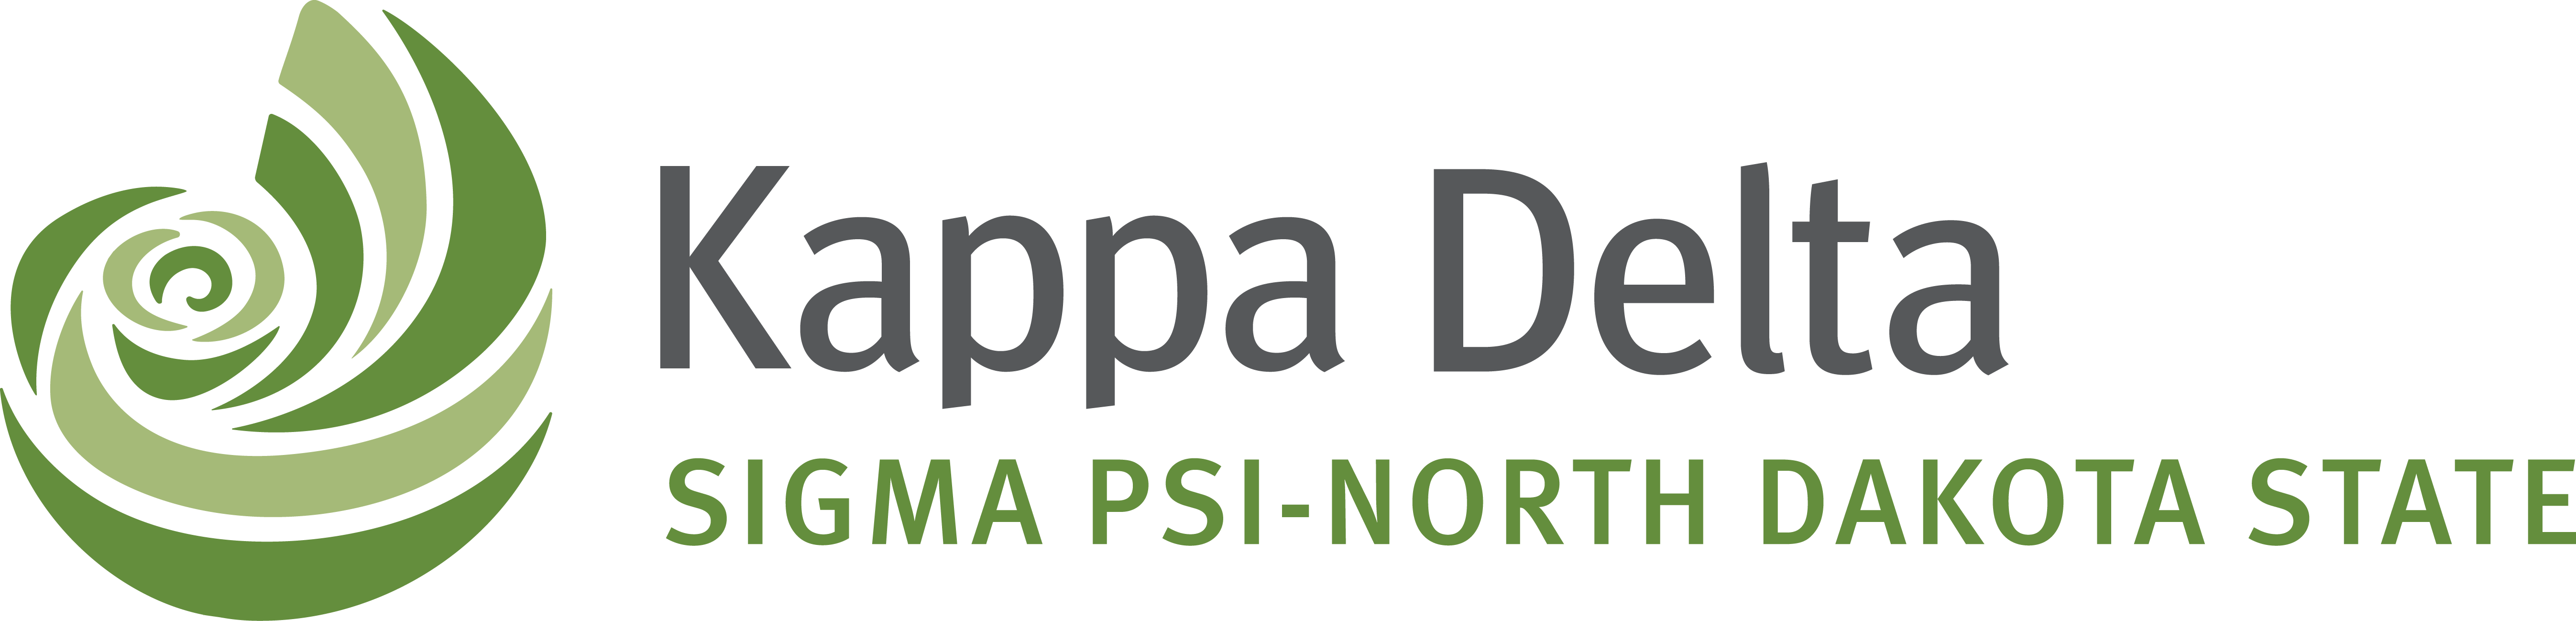 Download Org Slide Image - Kappa Delta Sorority Logo PNG Image with No Back...